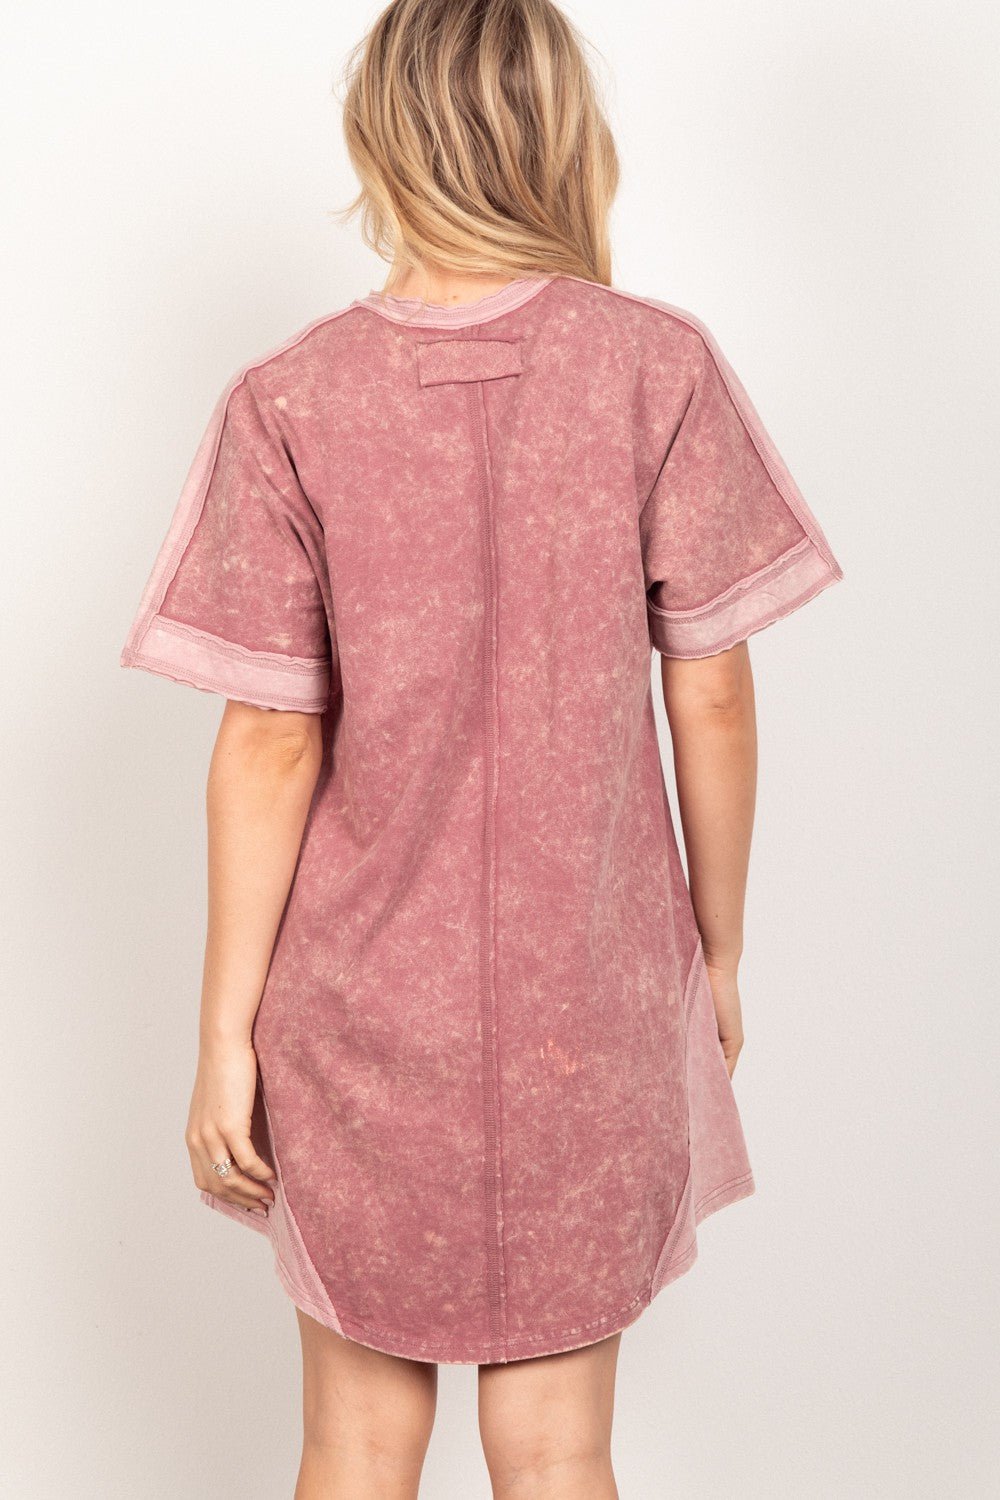 Short Sleeve V-Neck Mini Tee Dress in MauveMini DressVery J